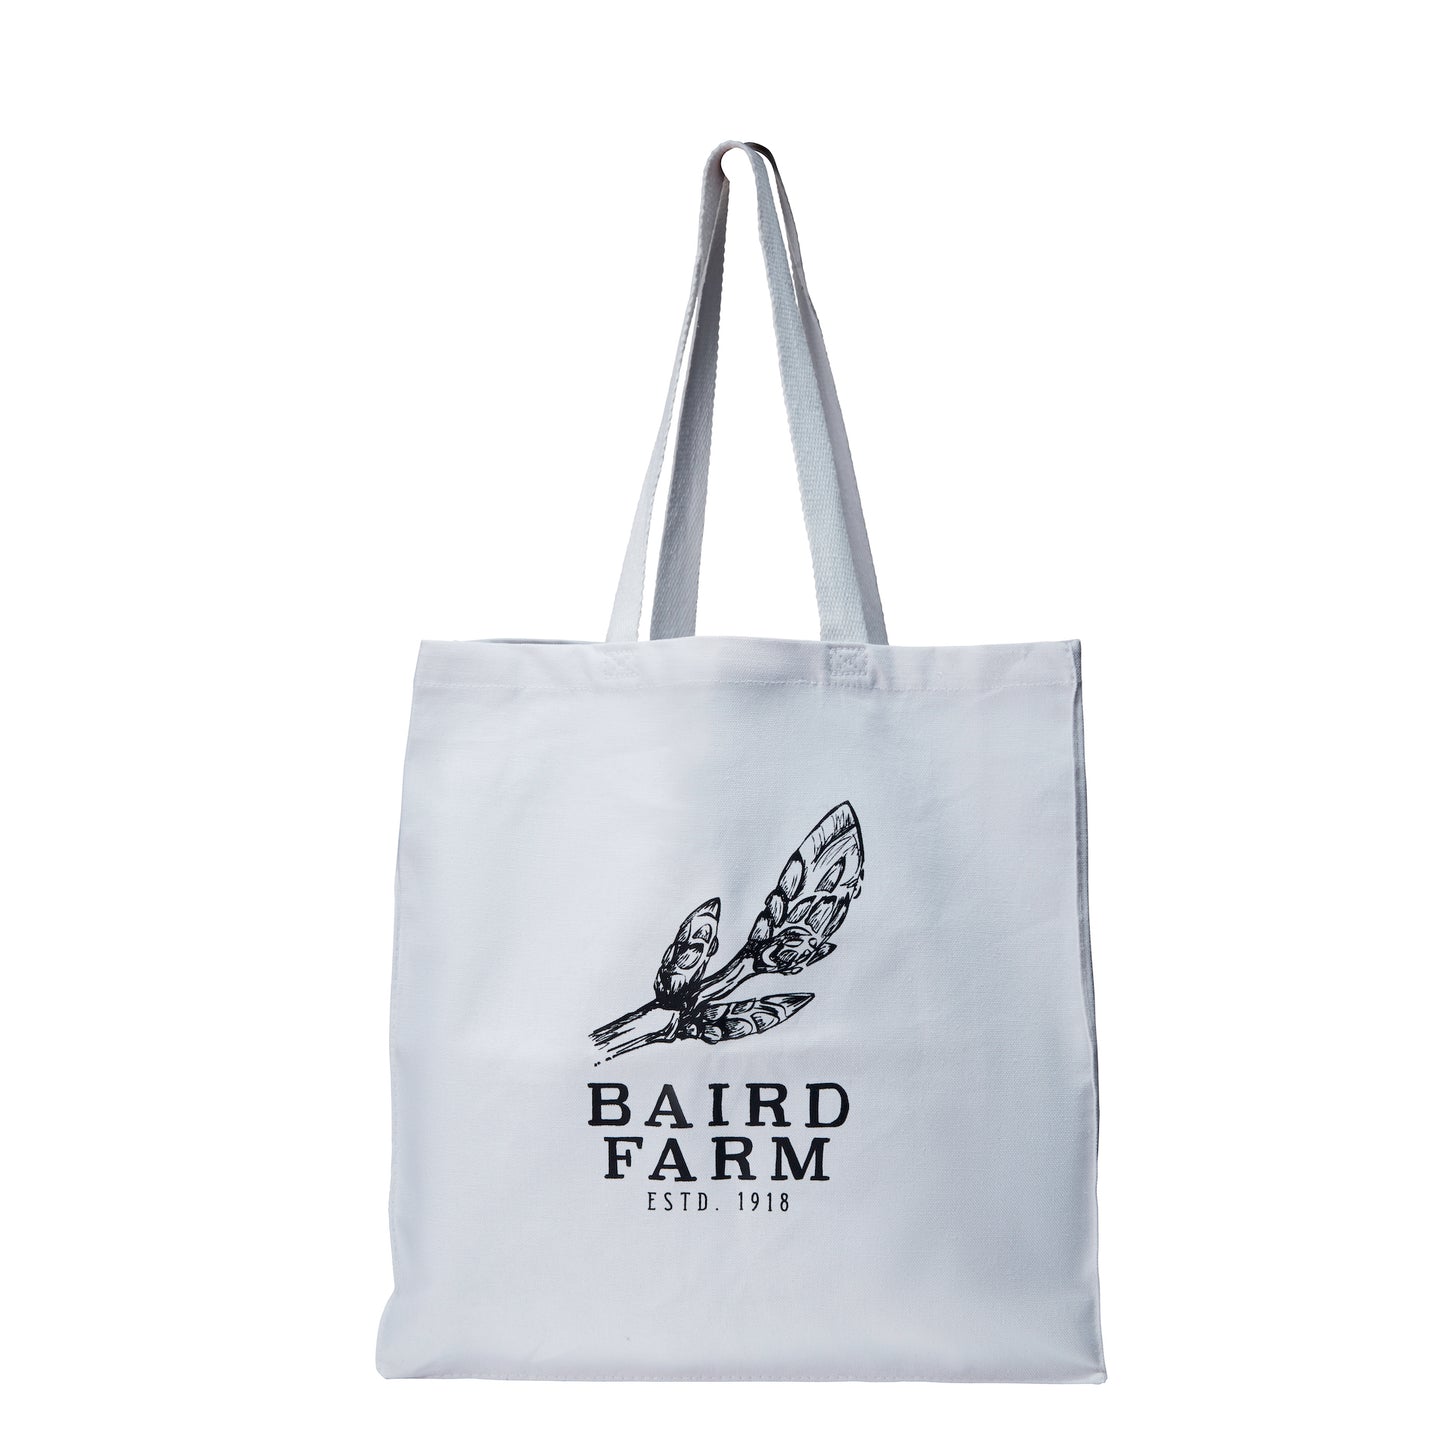 Baird Farm Tote Bag